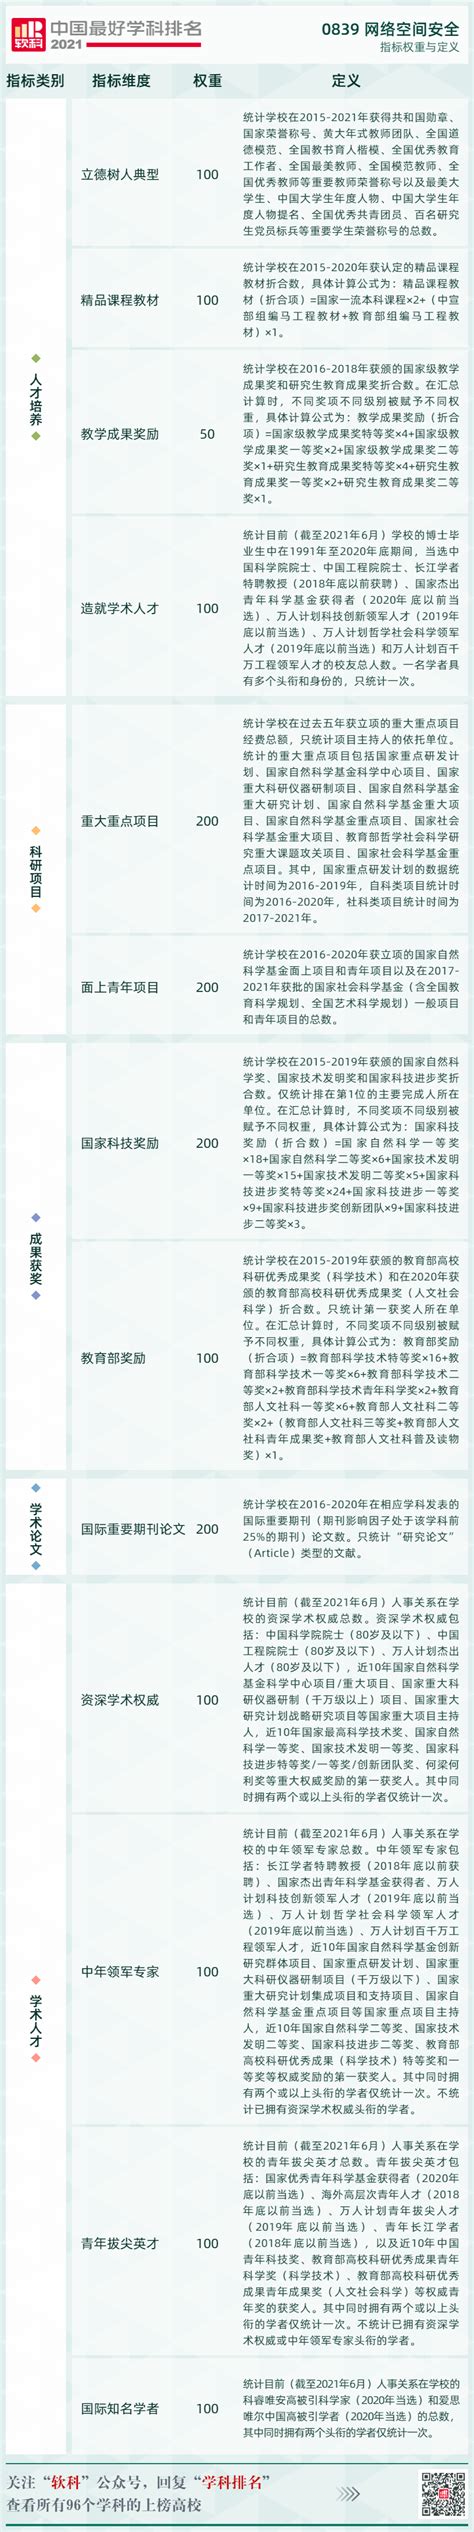 网络空间安全中国学科排名——2021软科-CSDN博客